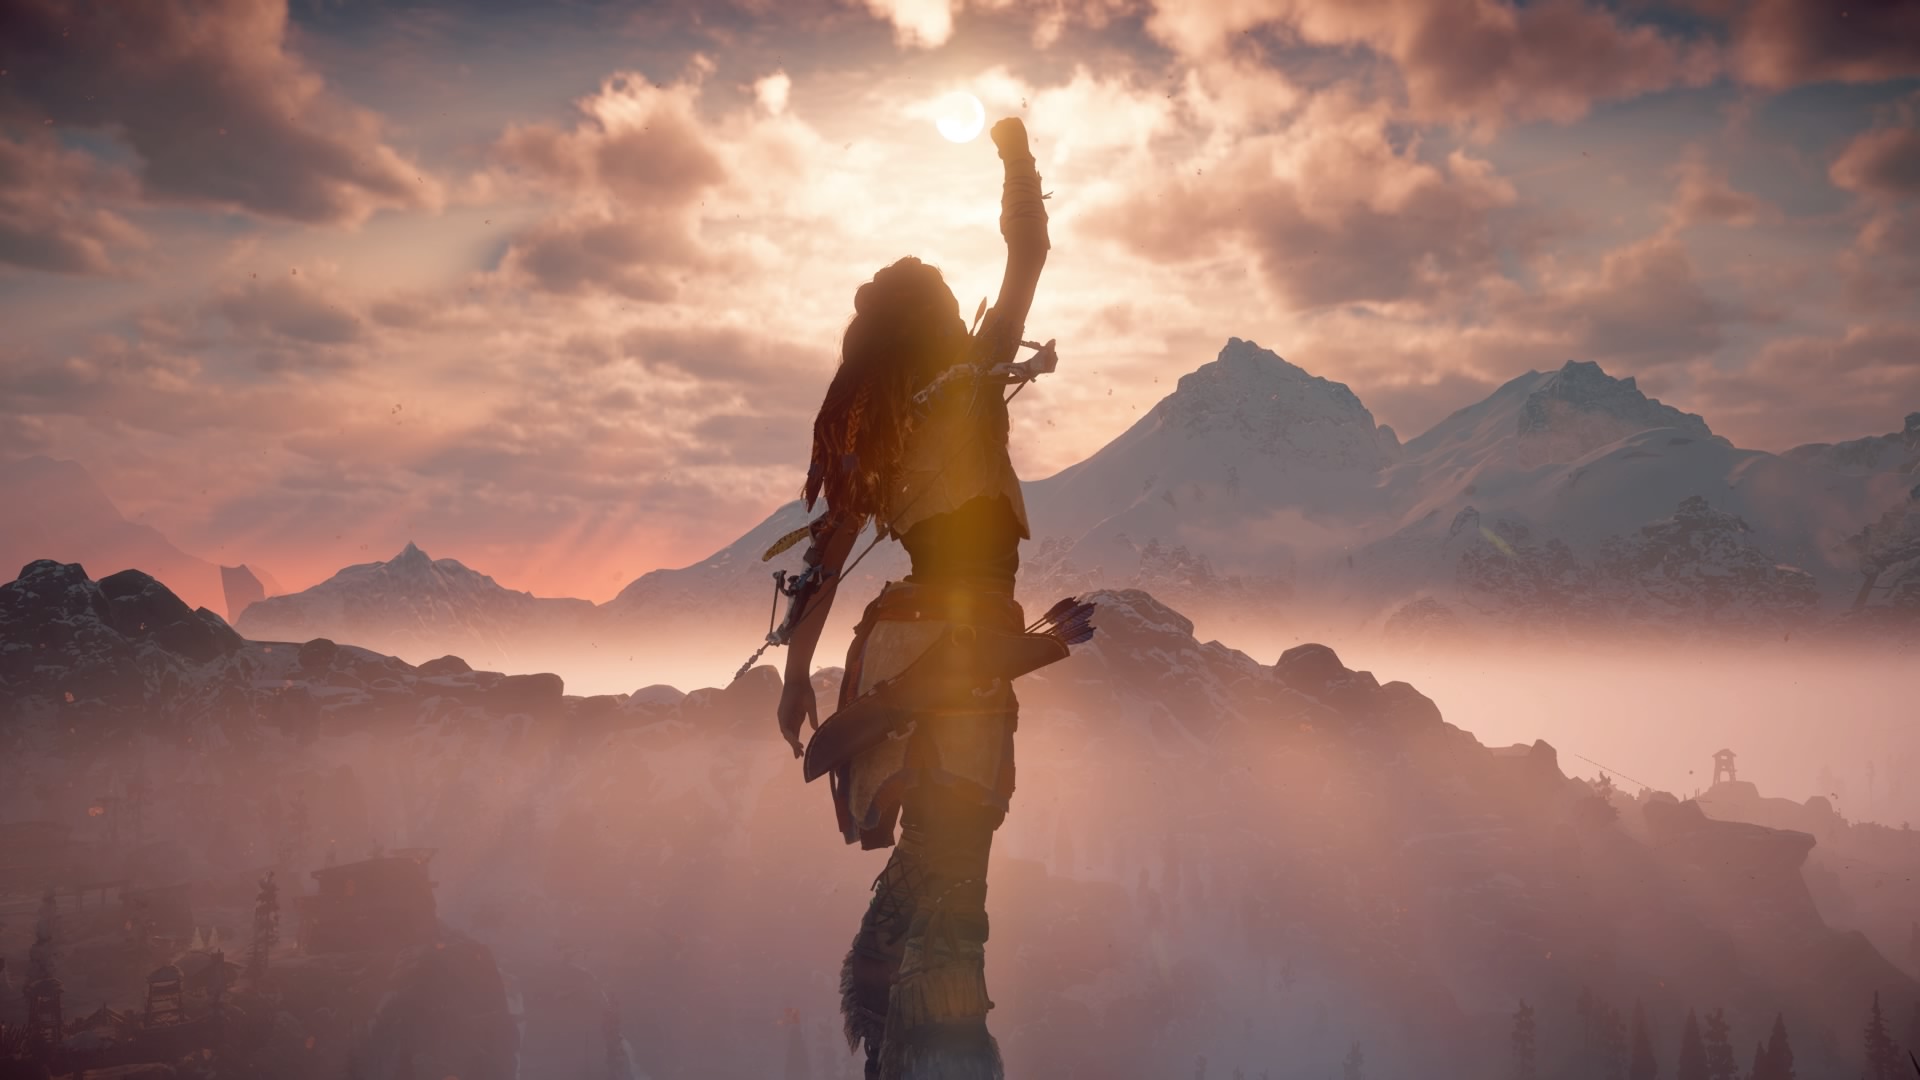 Horizon Zero Dawn rencontre Assassin's Creed dans un magnifique nouveau RPG